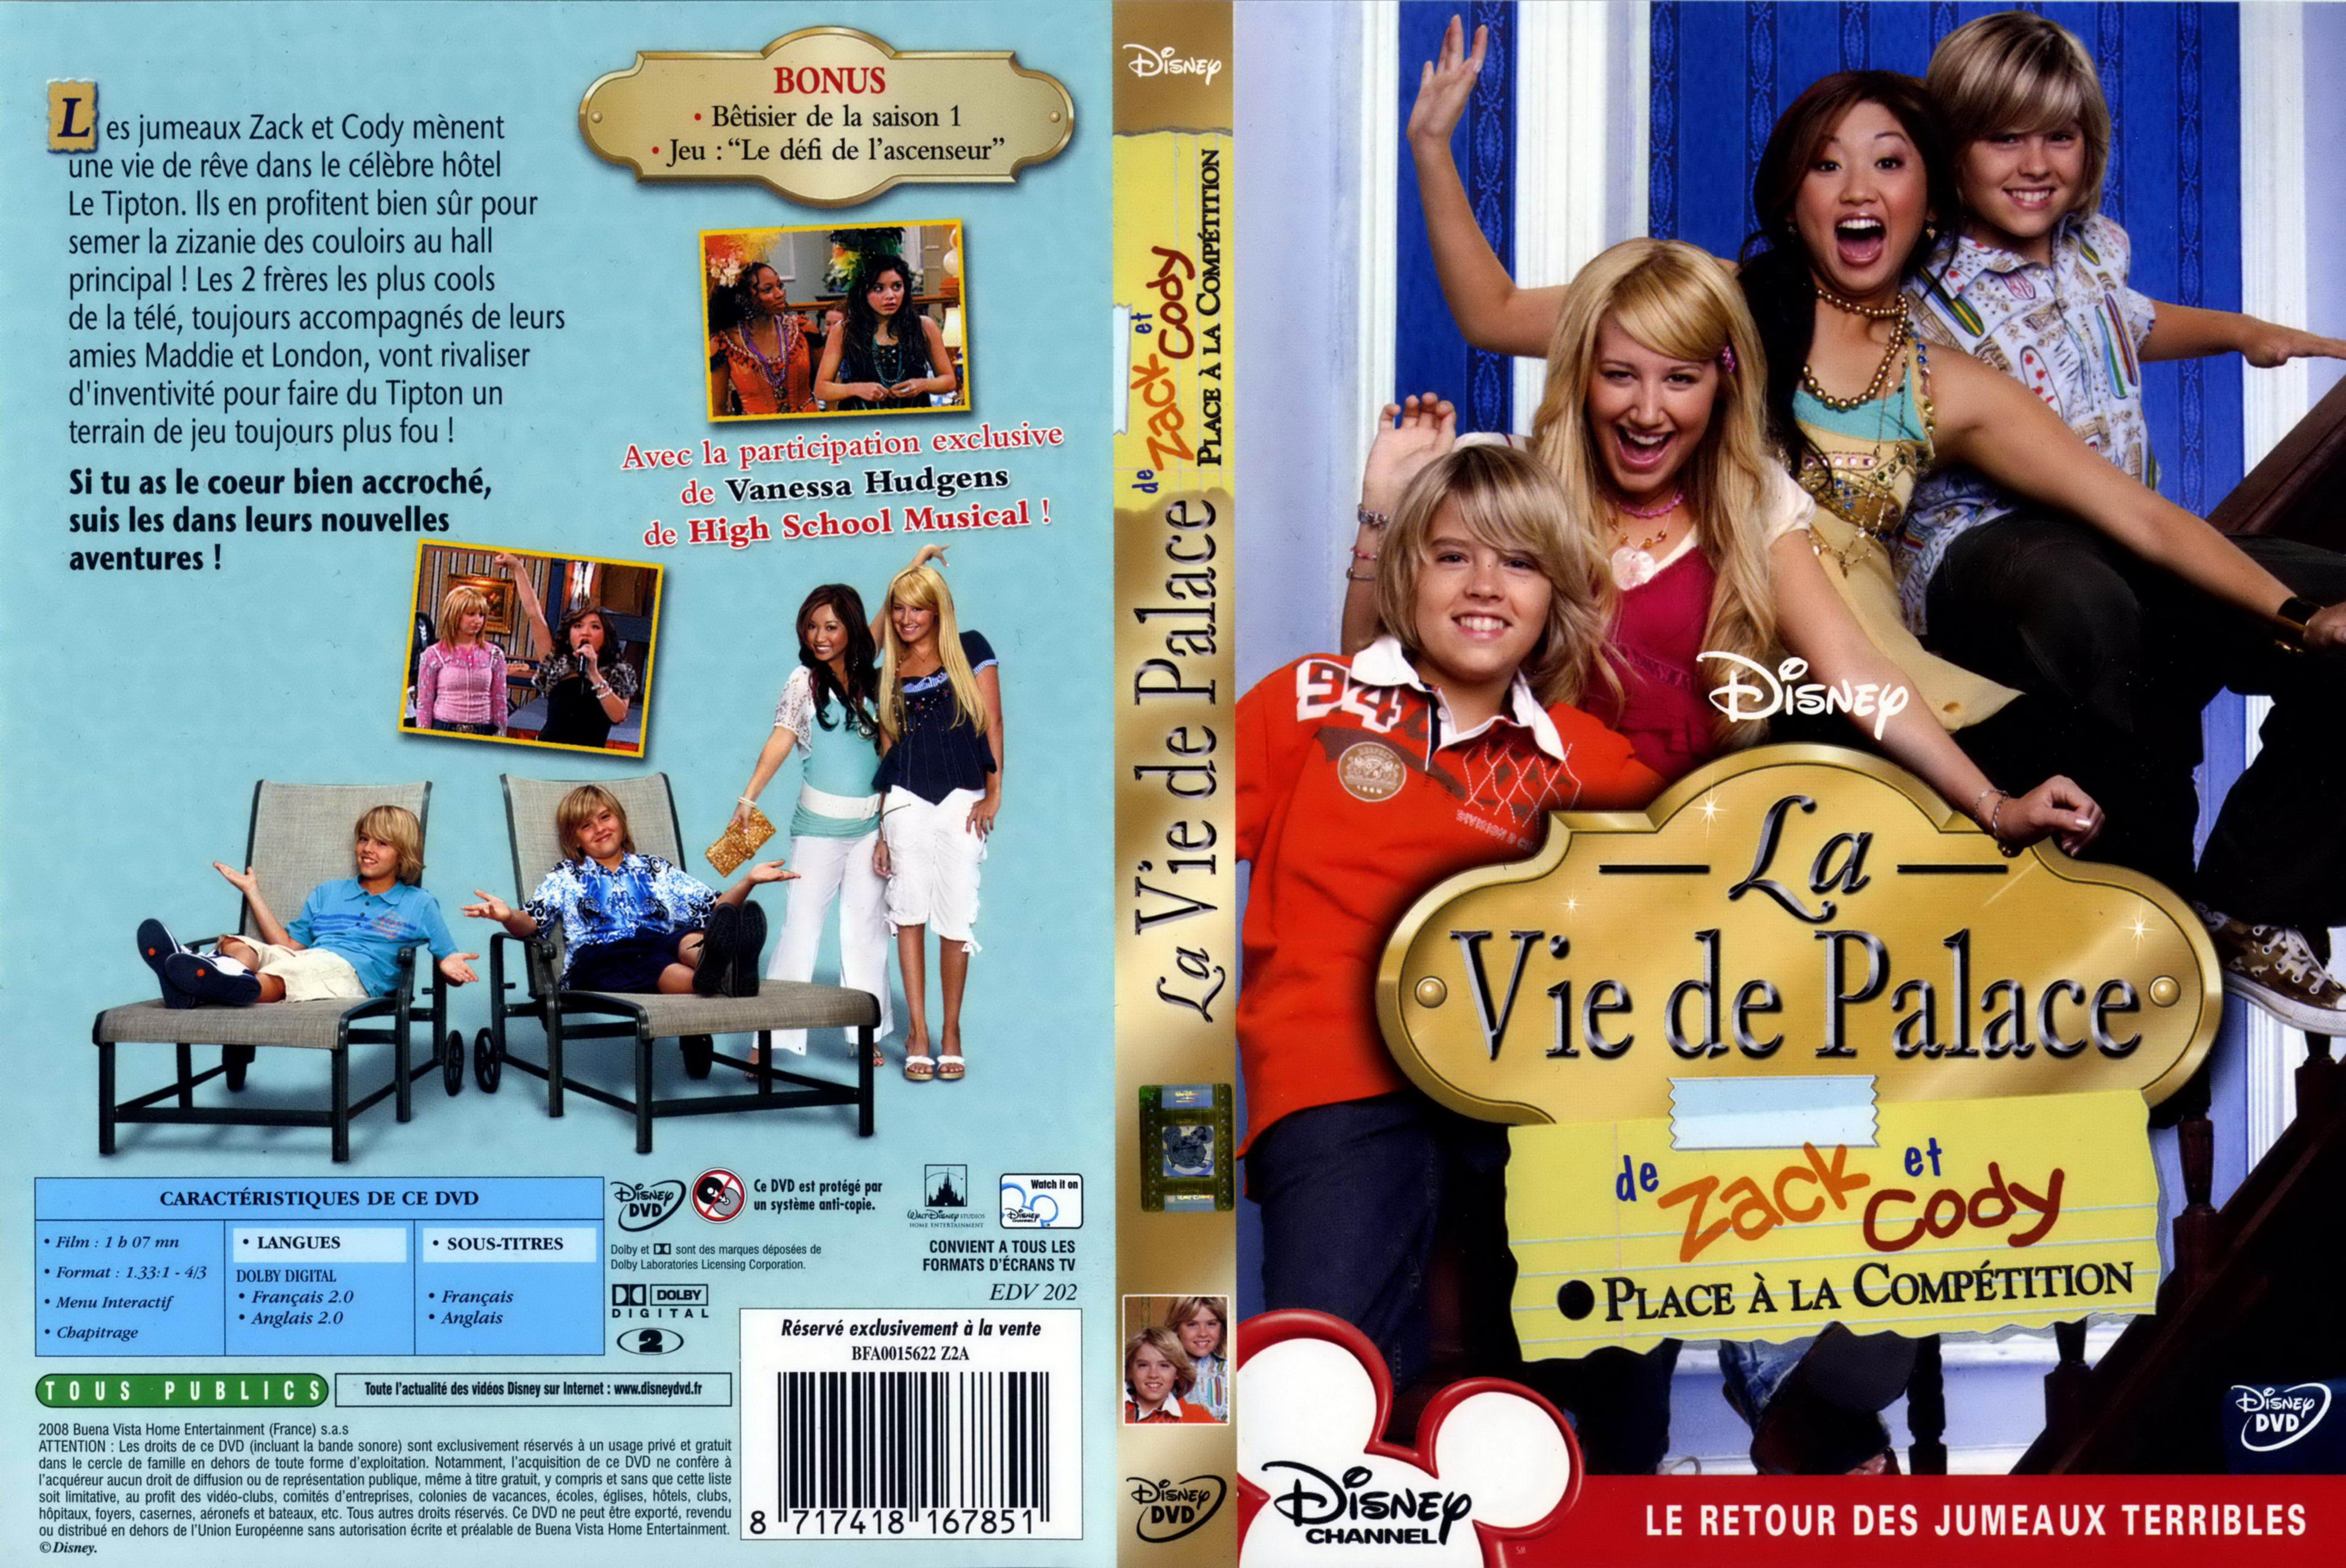 Jaquette DVD La vie de palace de Zack et Cody - Place  la comptition